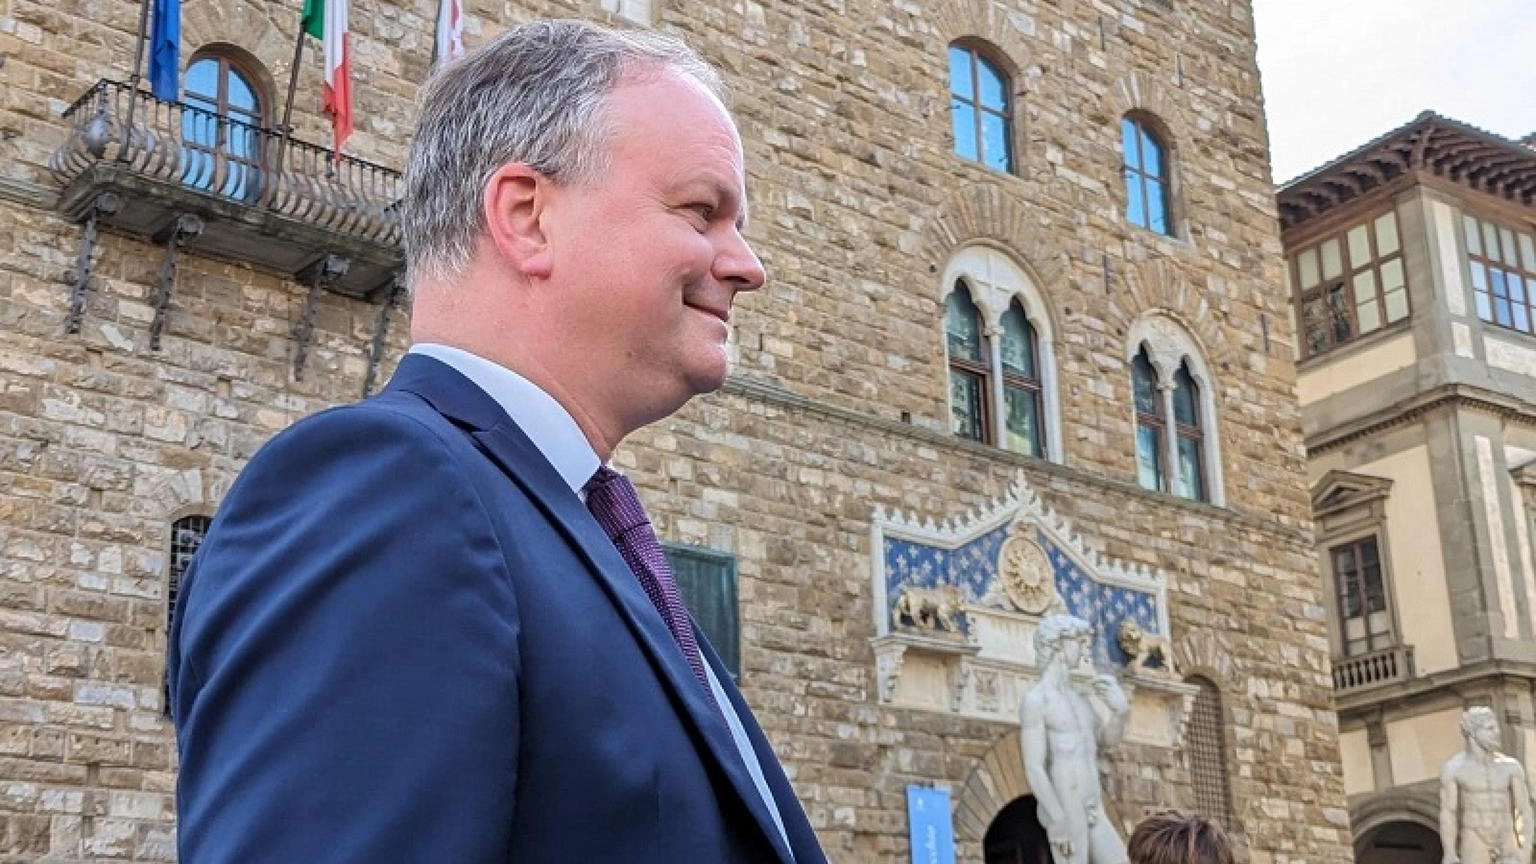 Schmidt ufficializza, 'mi candido a sindaco di Firenze'